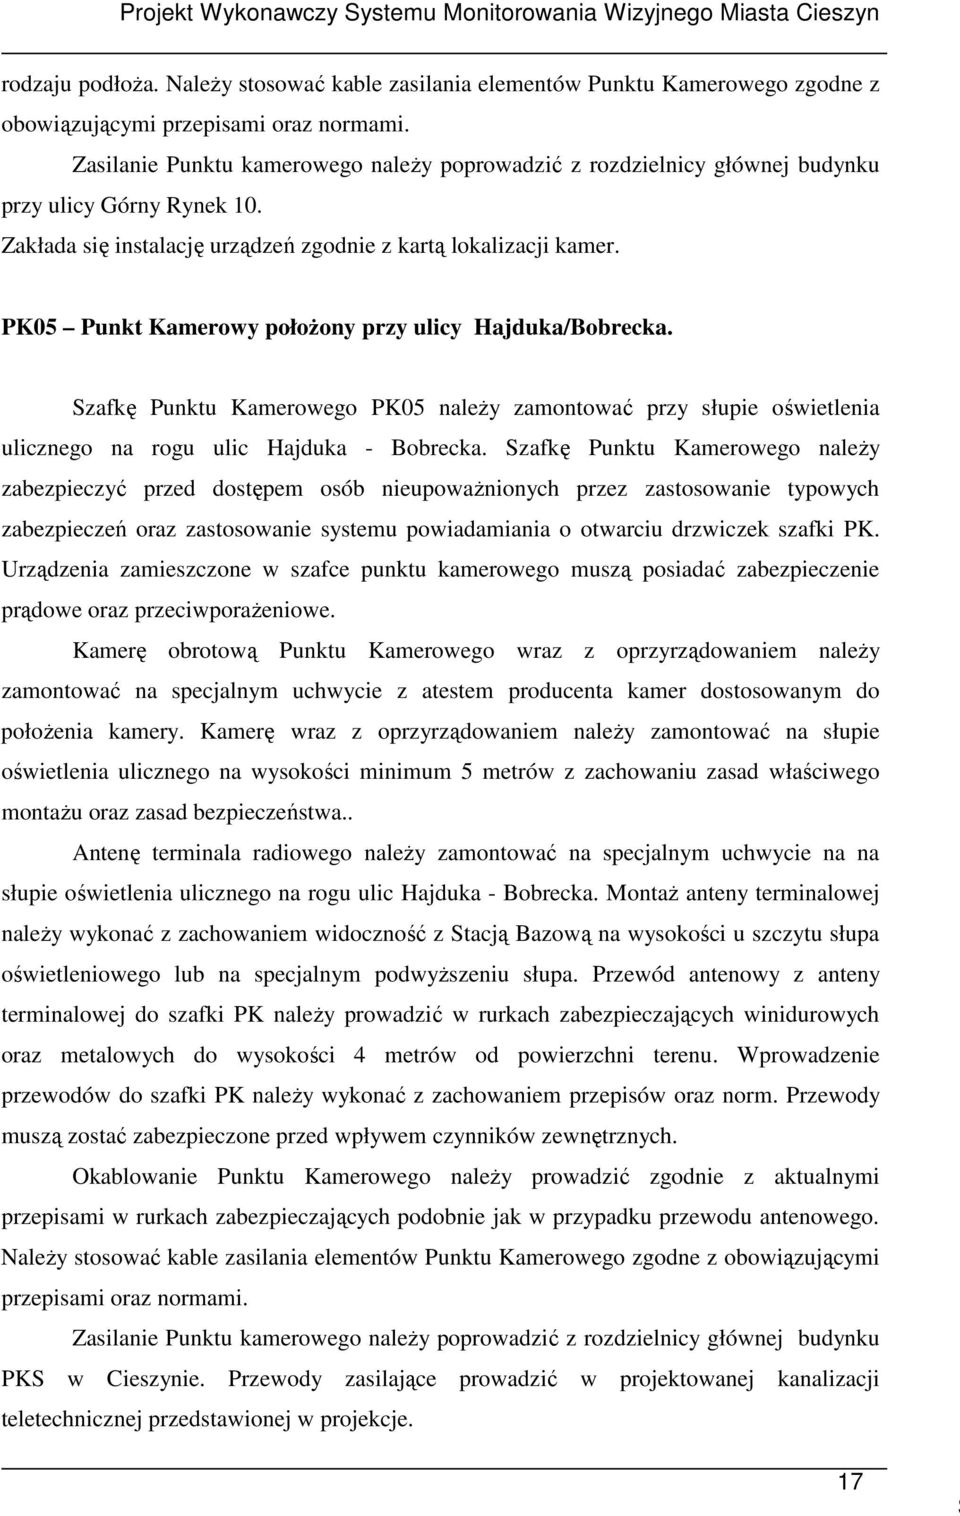 PK05 Punkt Kamerowy połoŝony przy ulicy Hajduka/Bobrecka. Szafkę Punktu Kamerowego PK05 naleŝy zamontować przy słupie oświetlenia ulicznego na rogu ulic Hajduka - Bobrecka.